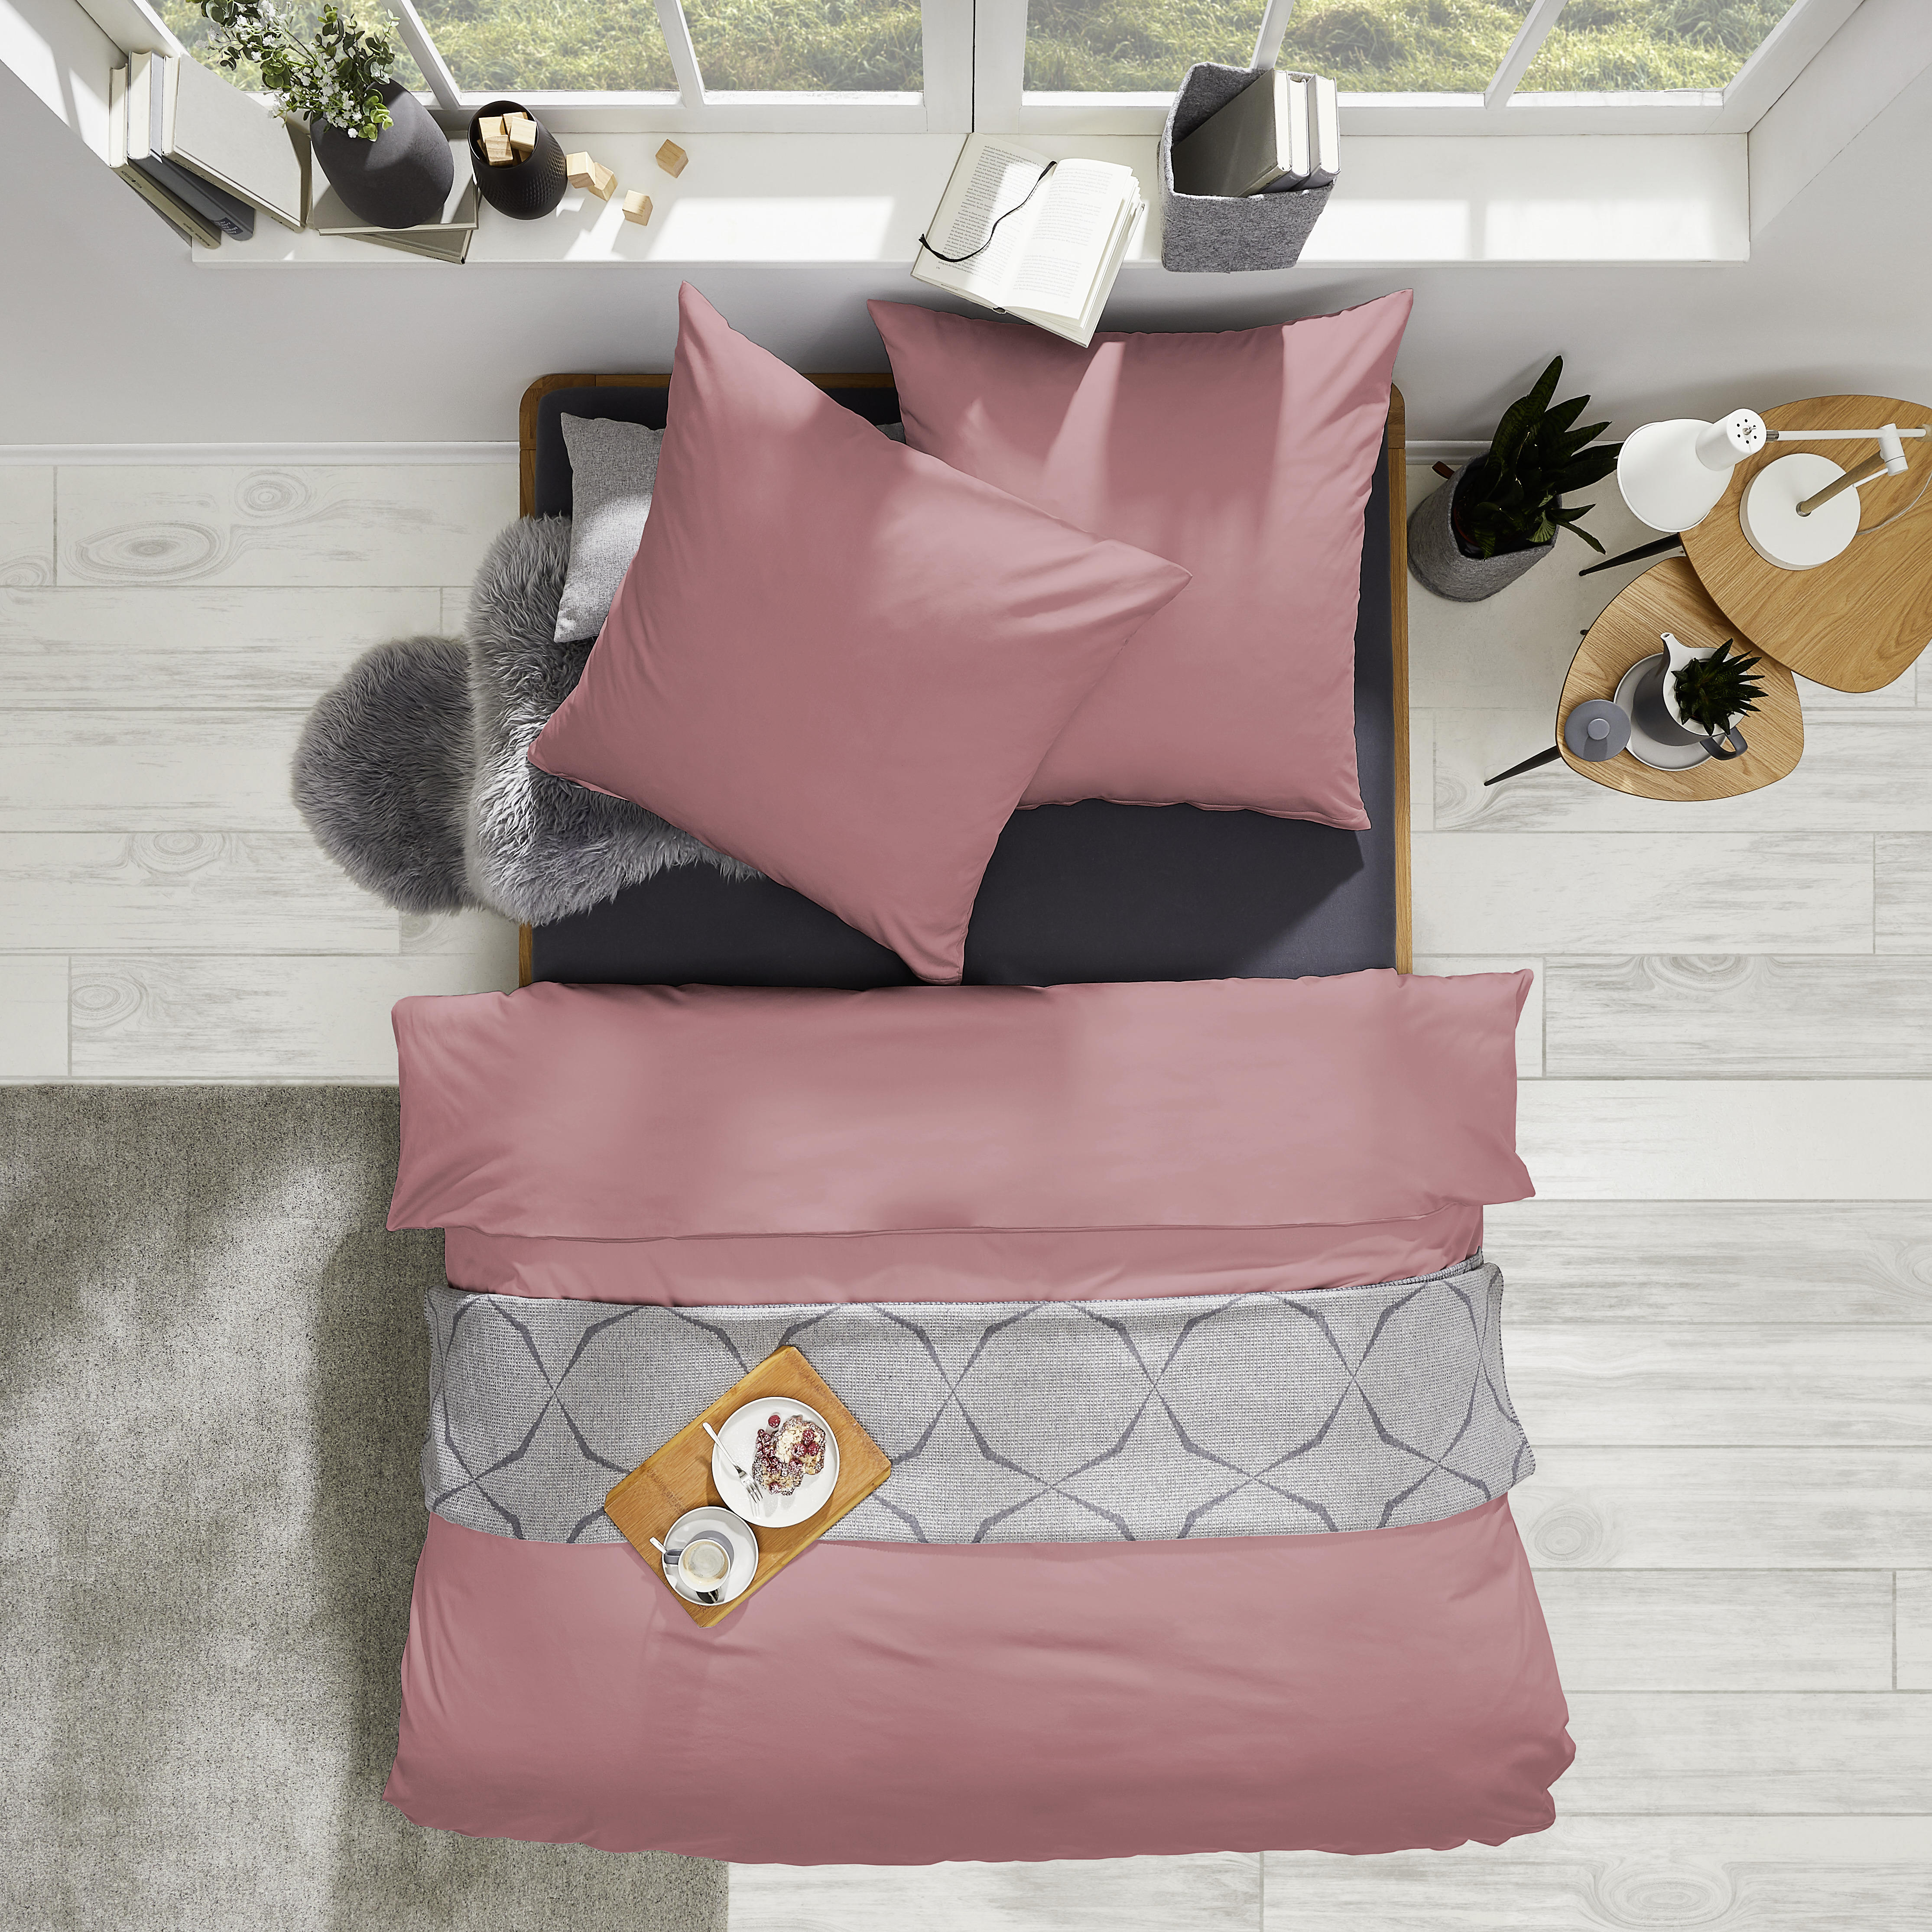 BETTWÄSCHE Satin  - Pink, KONVENTIONELL, Textil (200/200cm) - Bio:Vio